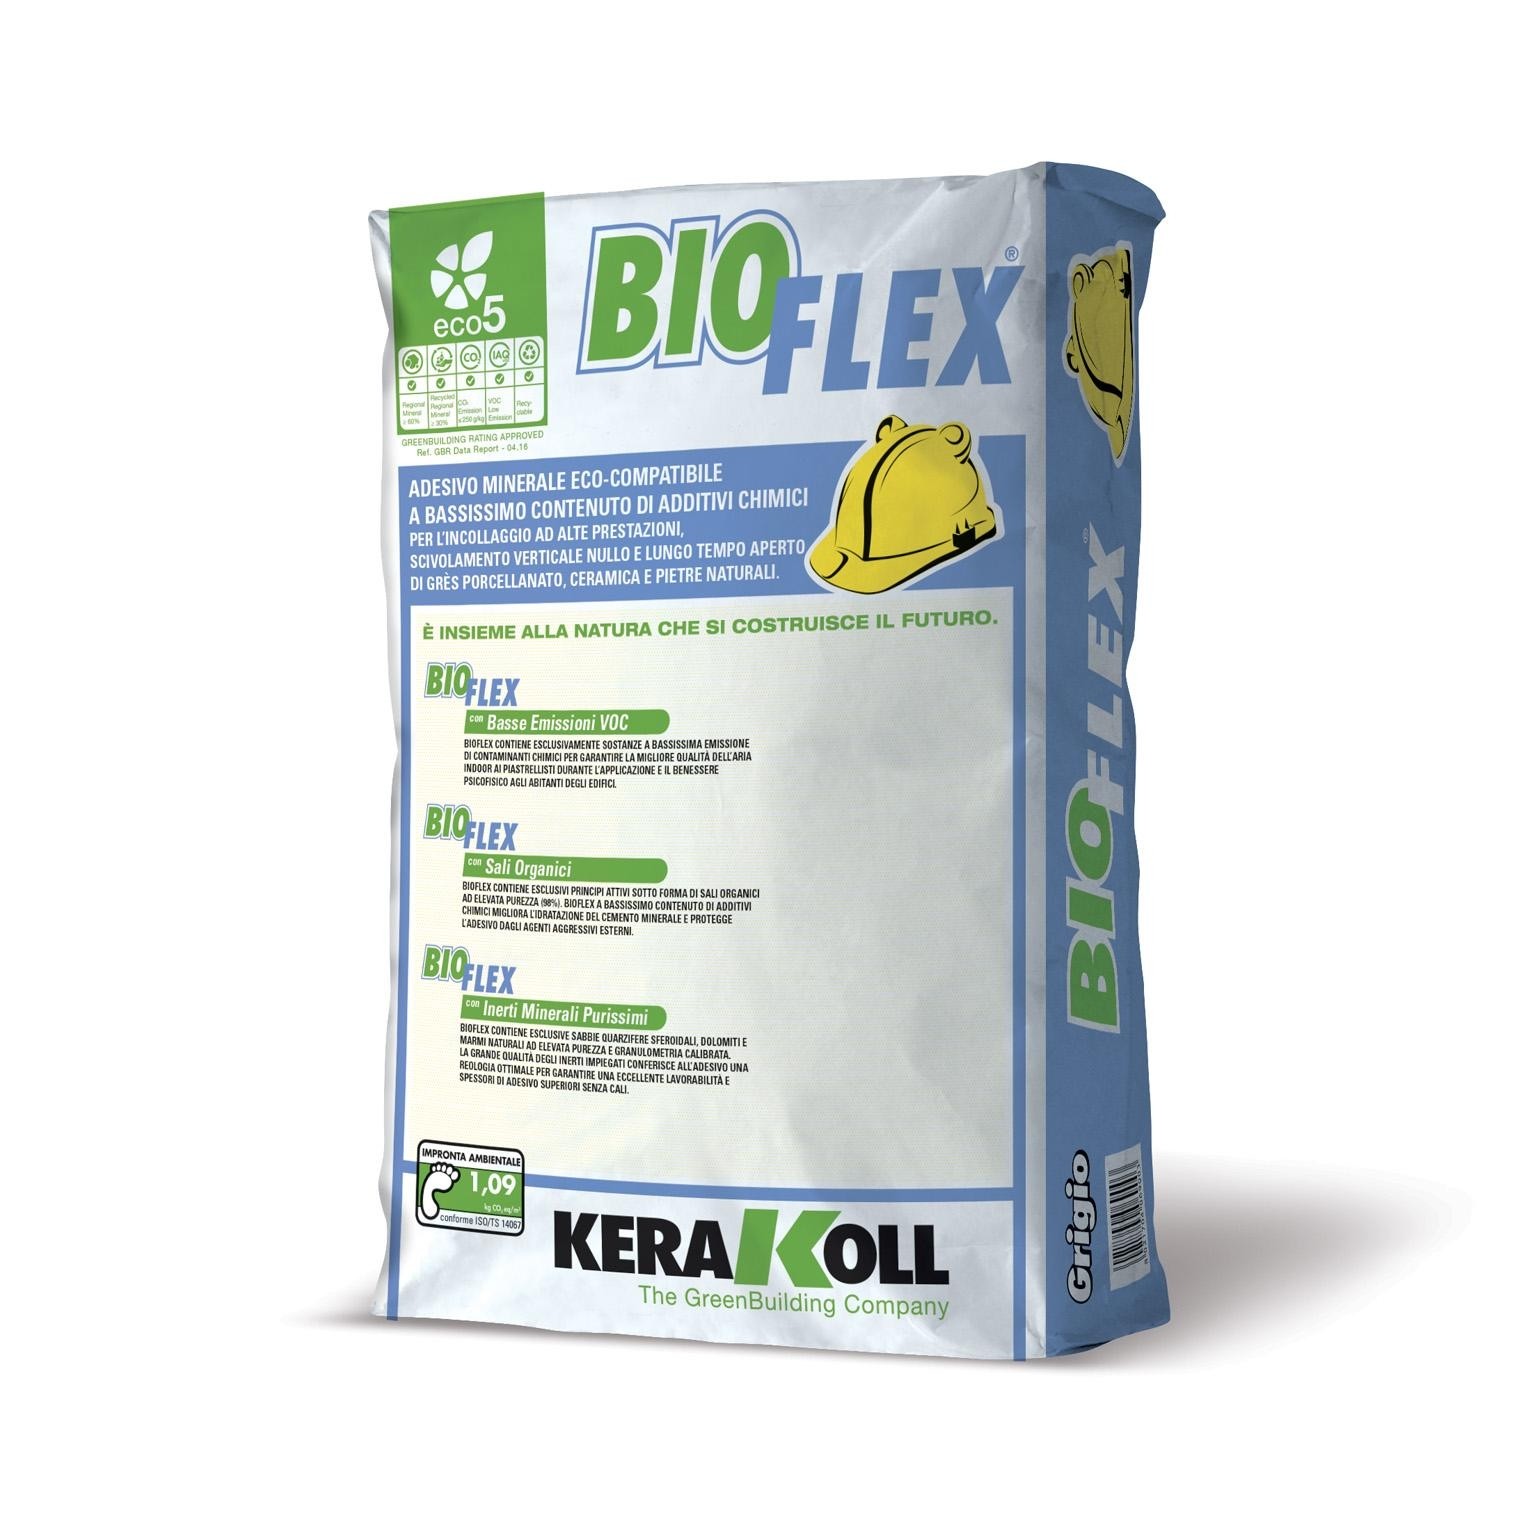 Bioflex Kerakoll sacco da 25 kg con 1 sacco si posano 6 mq